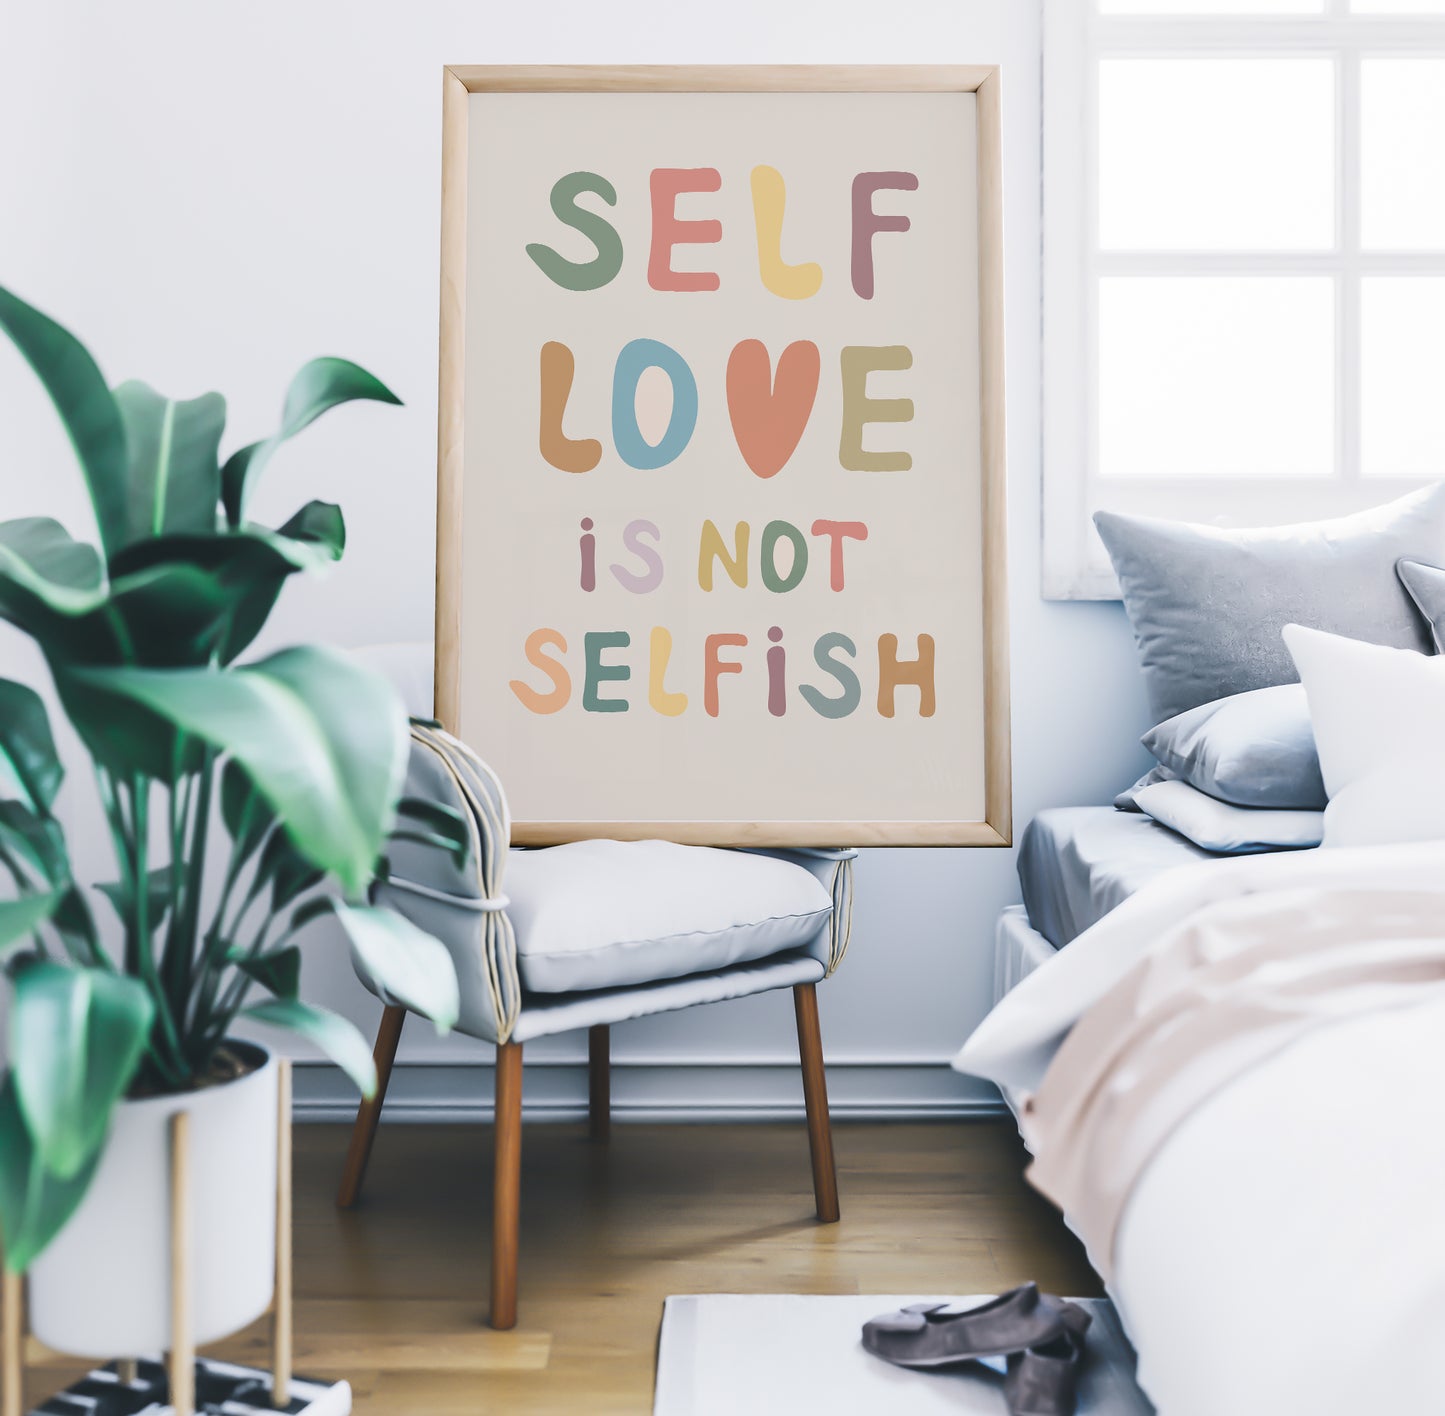 Self Love Is Not Selfish Print